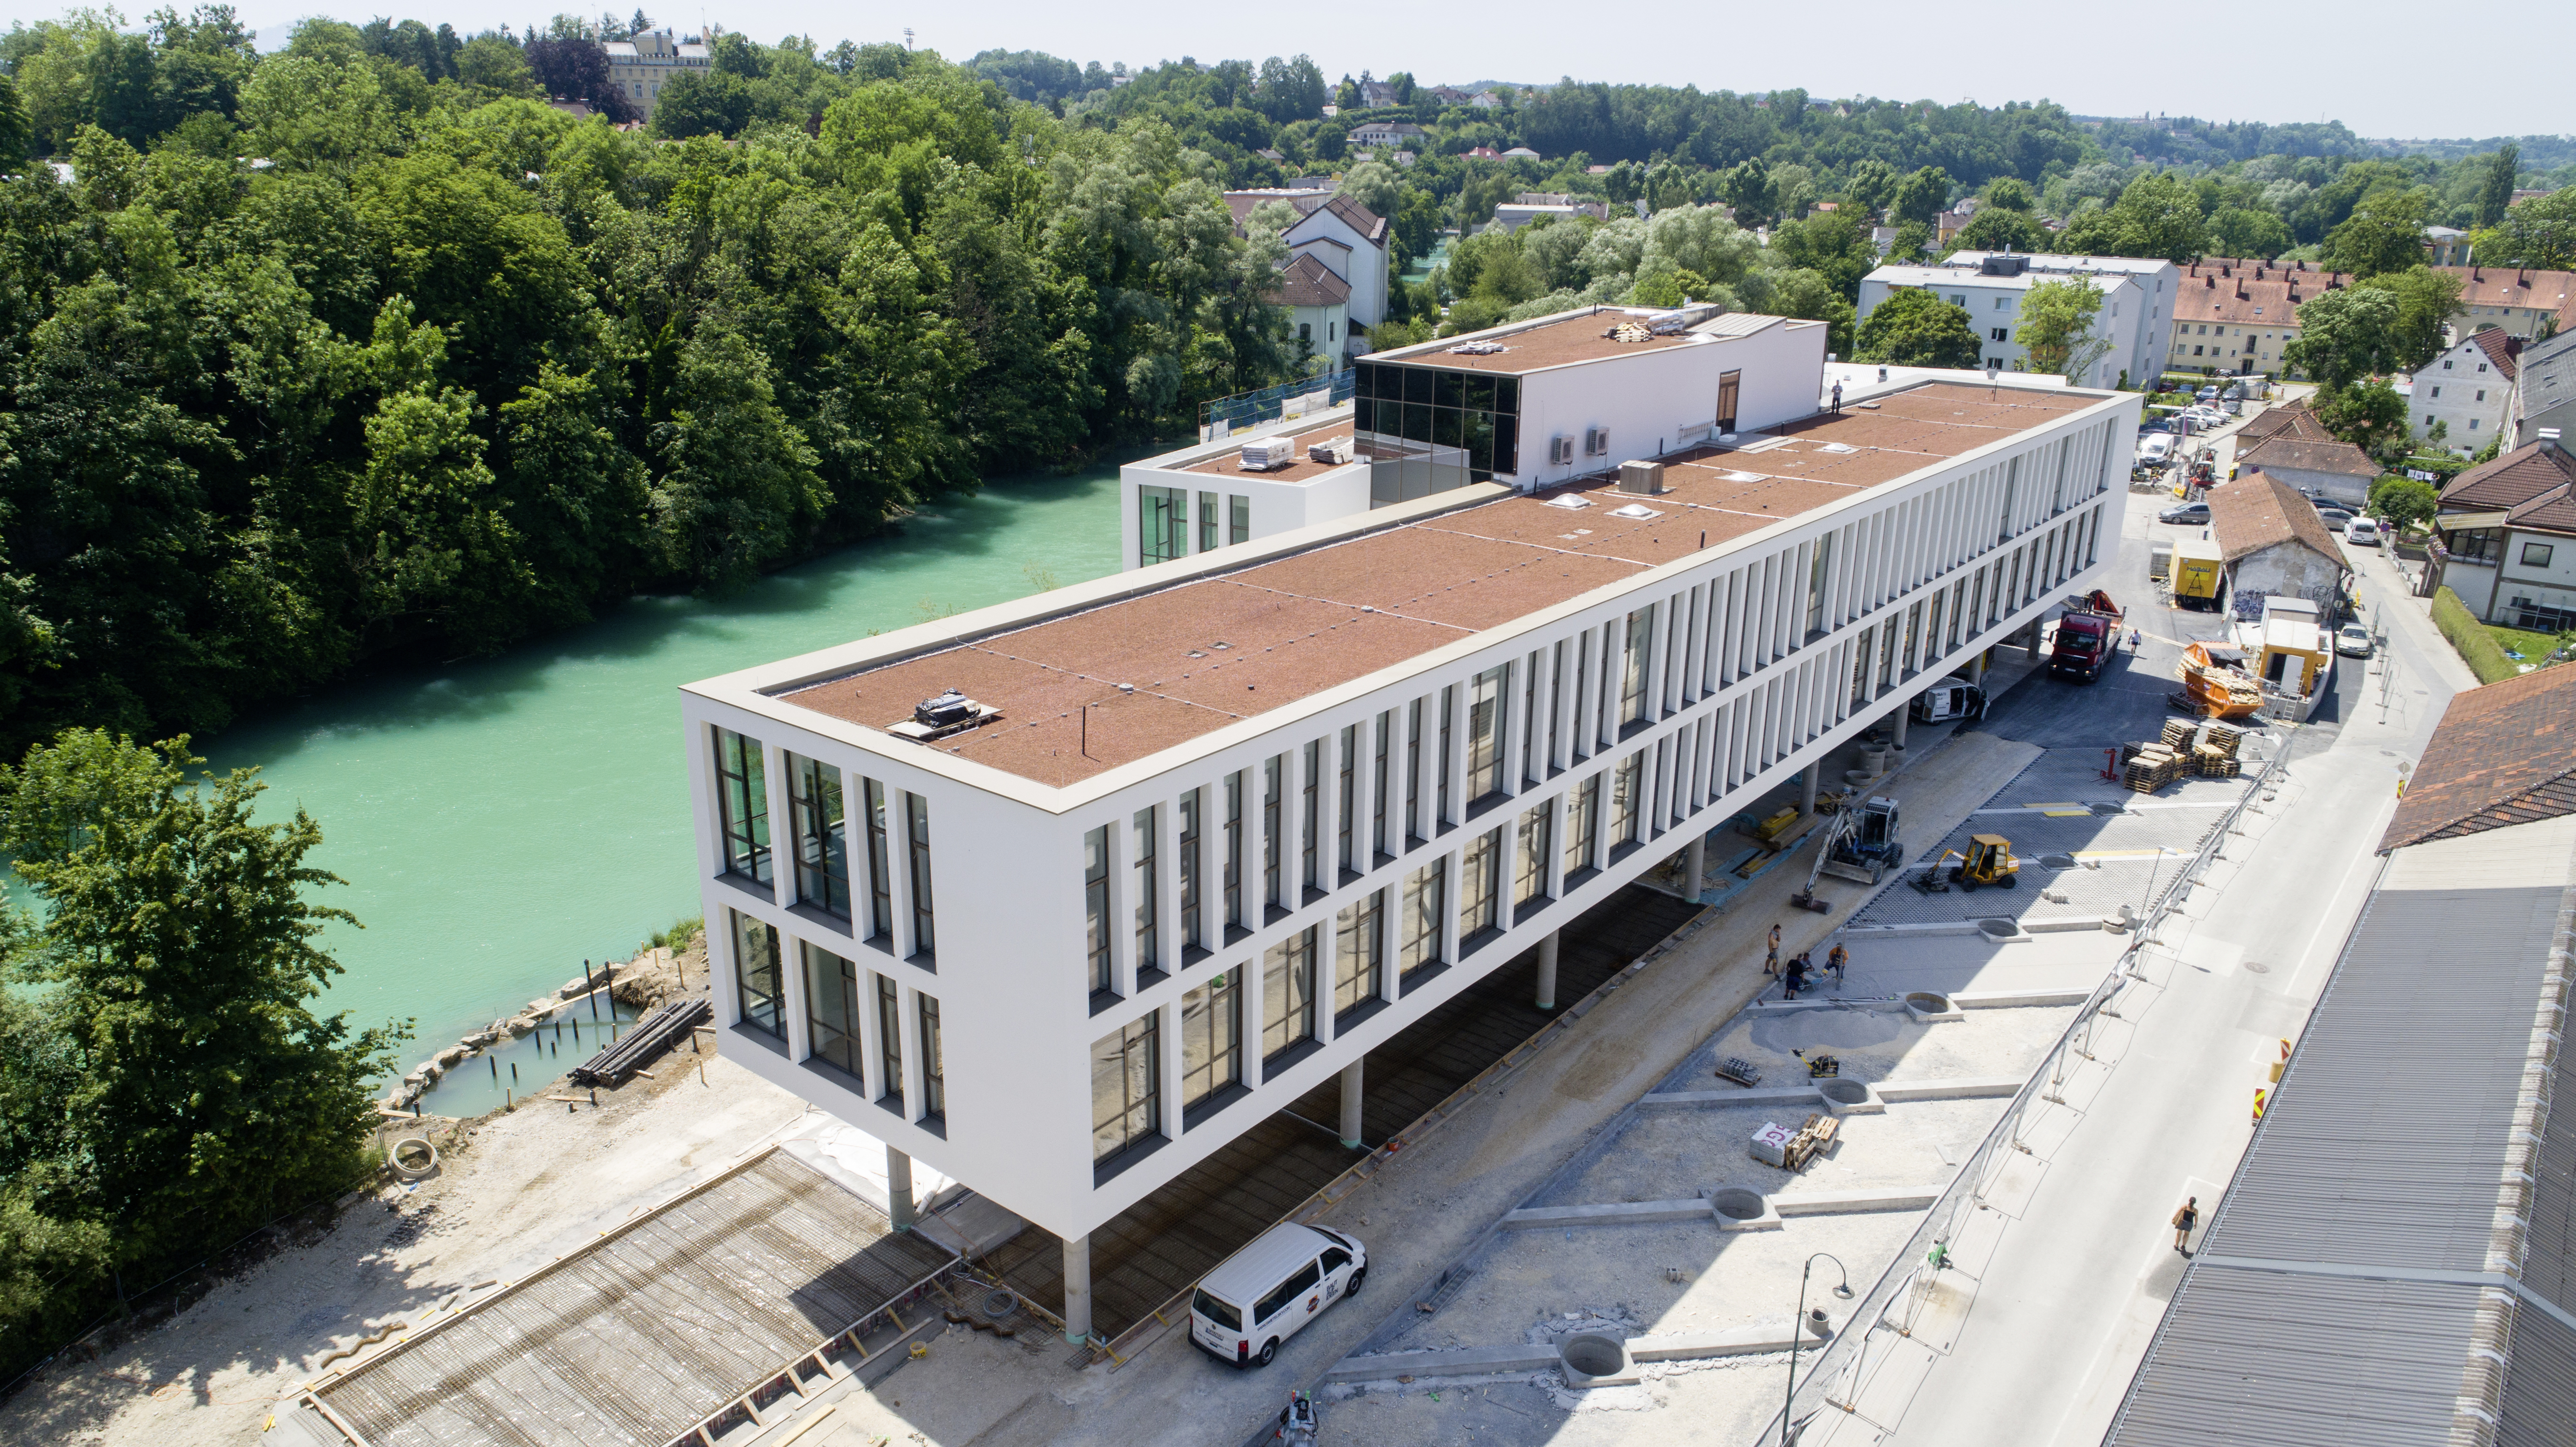 Campusgebäude der Fachhochschule, Steyr - Building construction